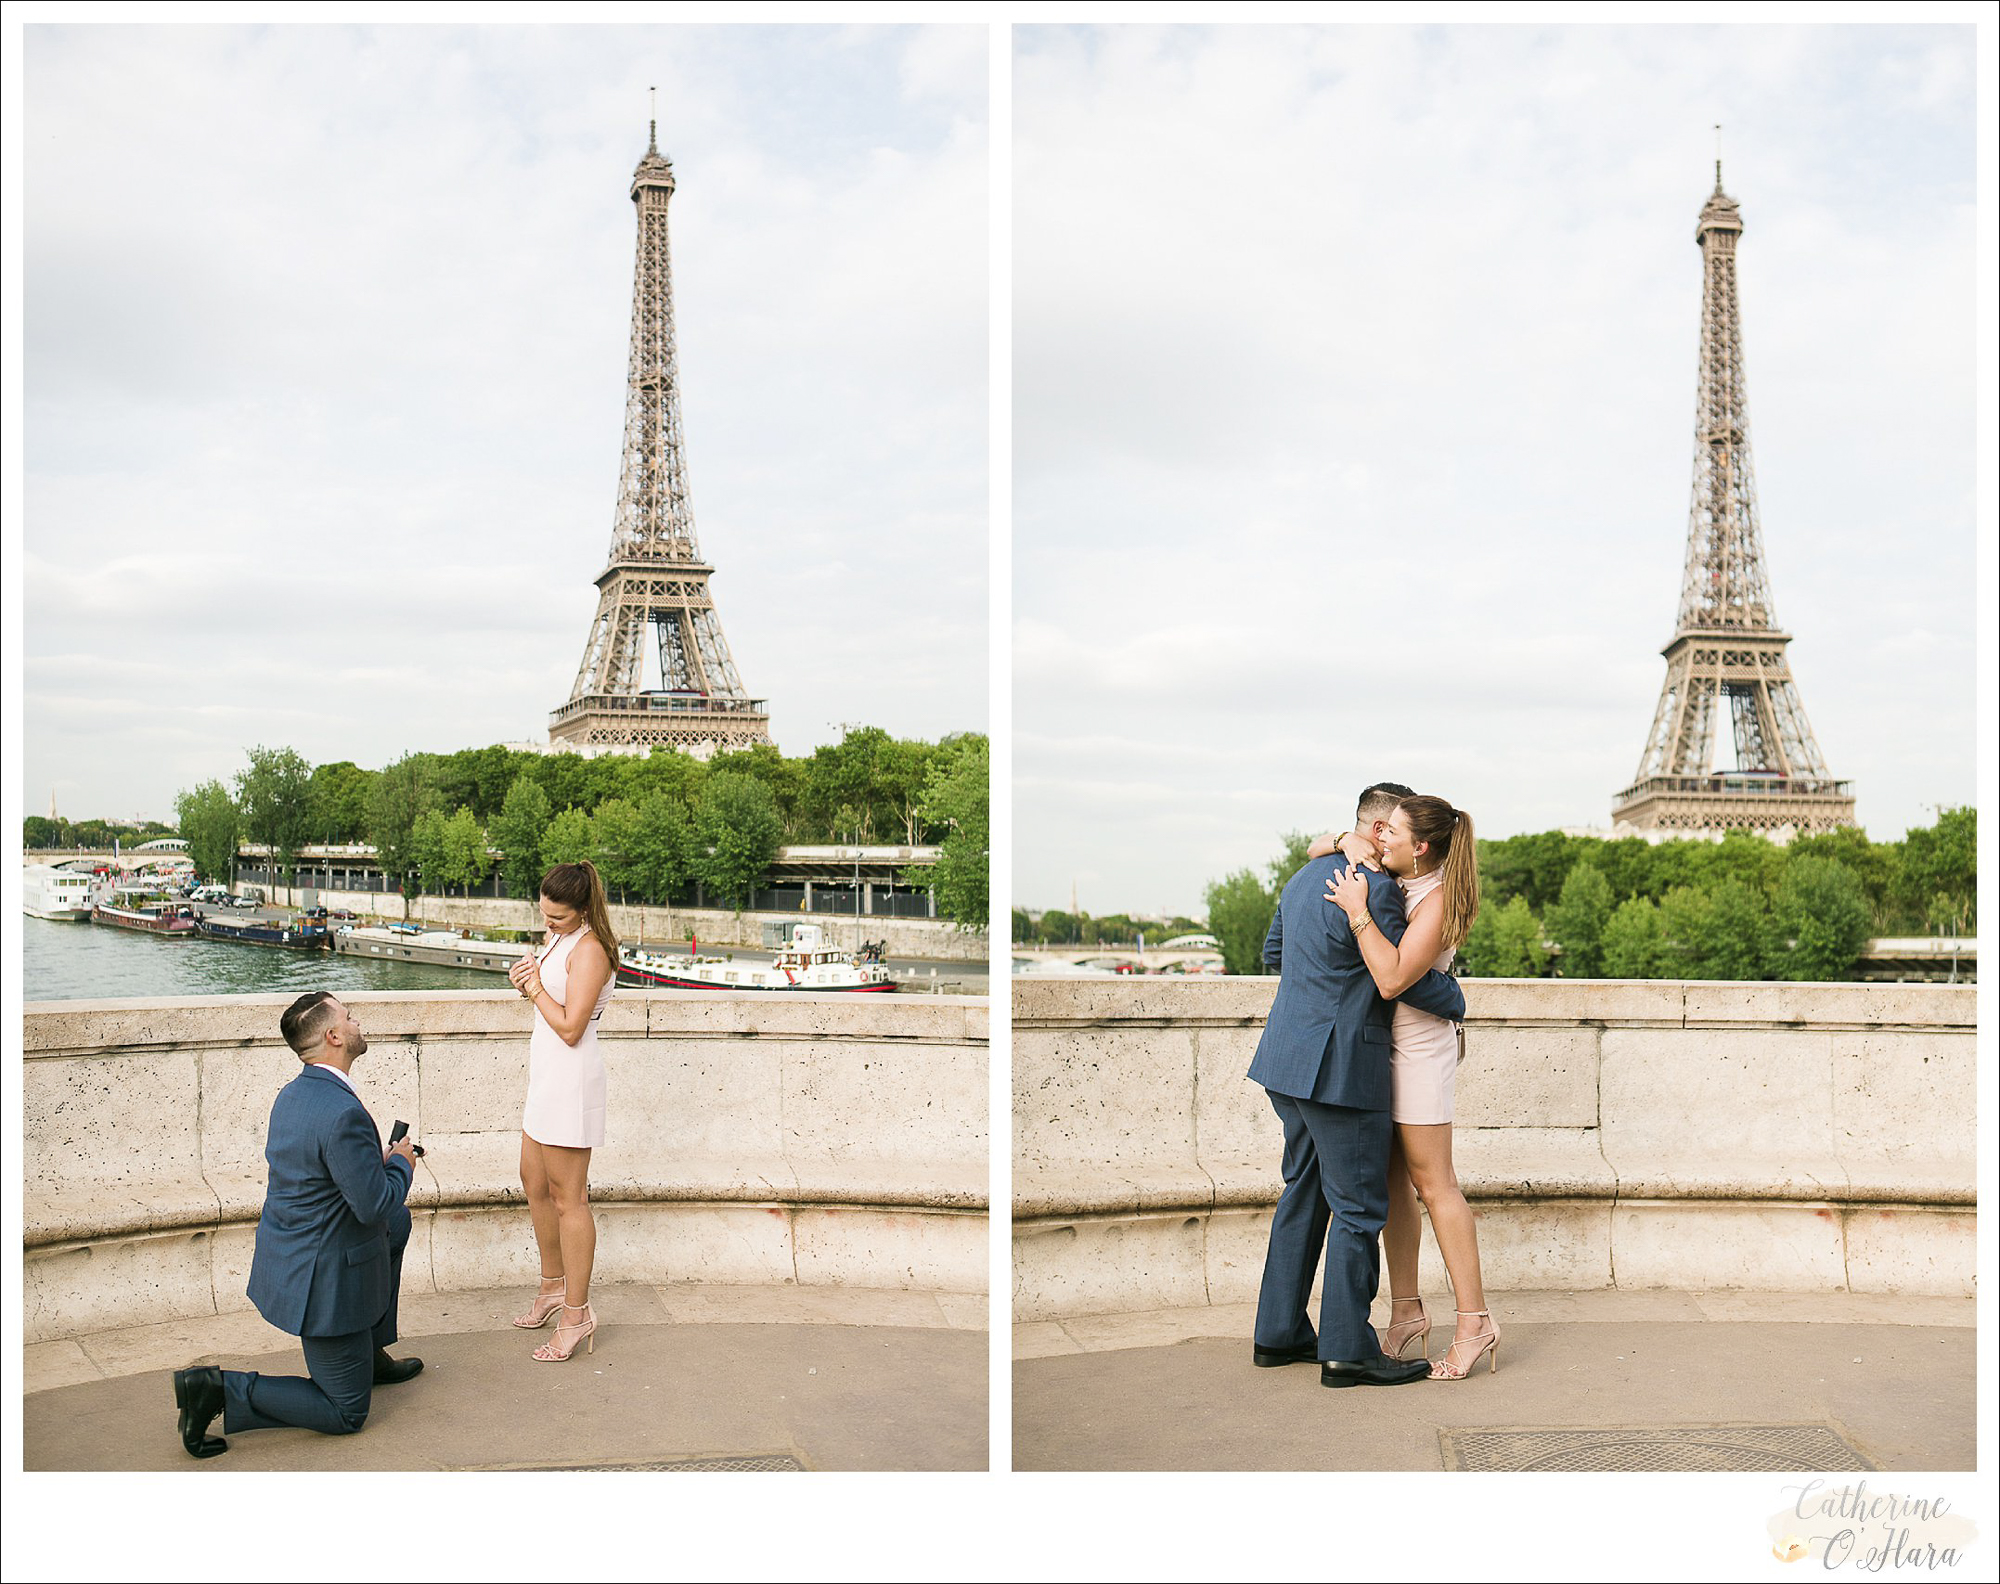 surprise proposal engagement photographer paris france-21.jpg